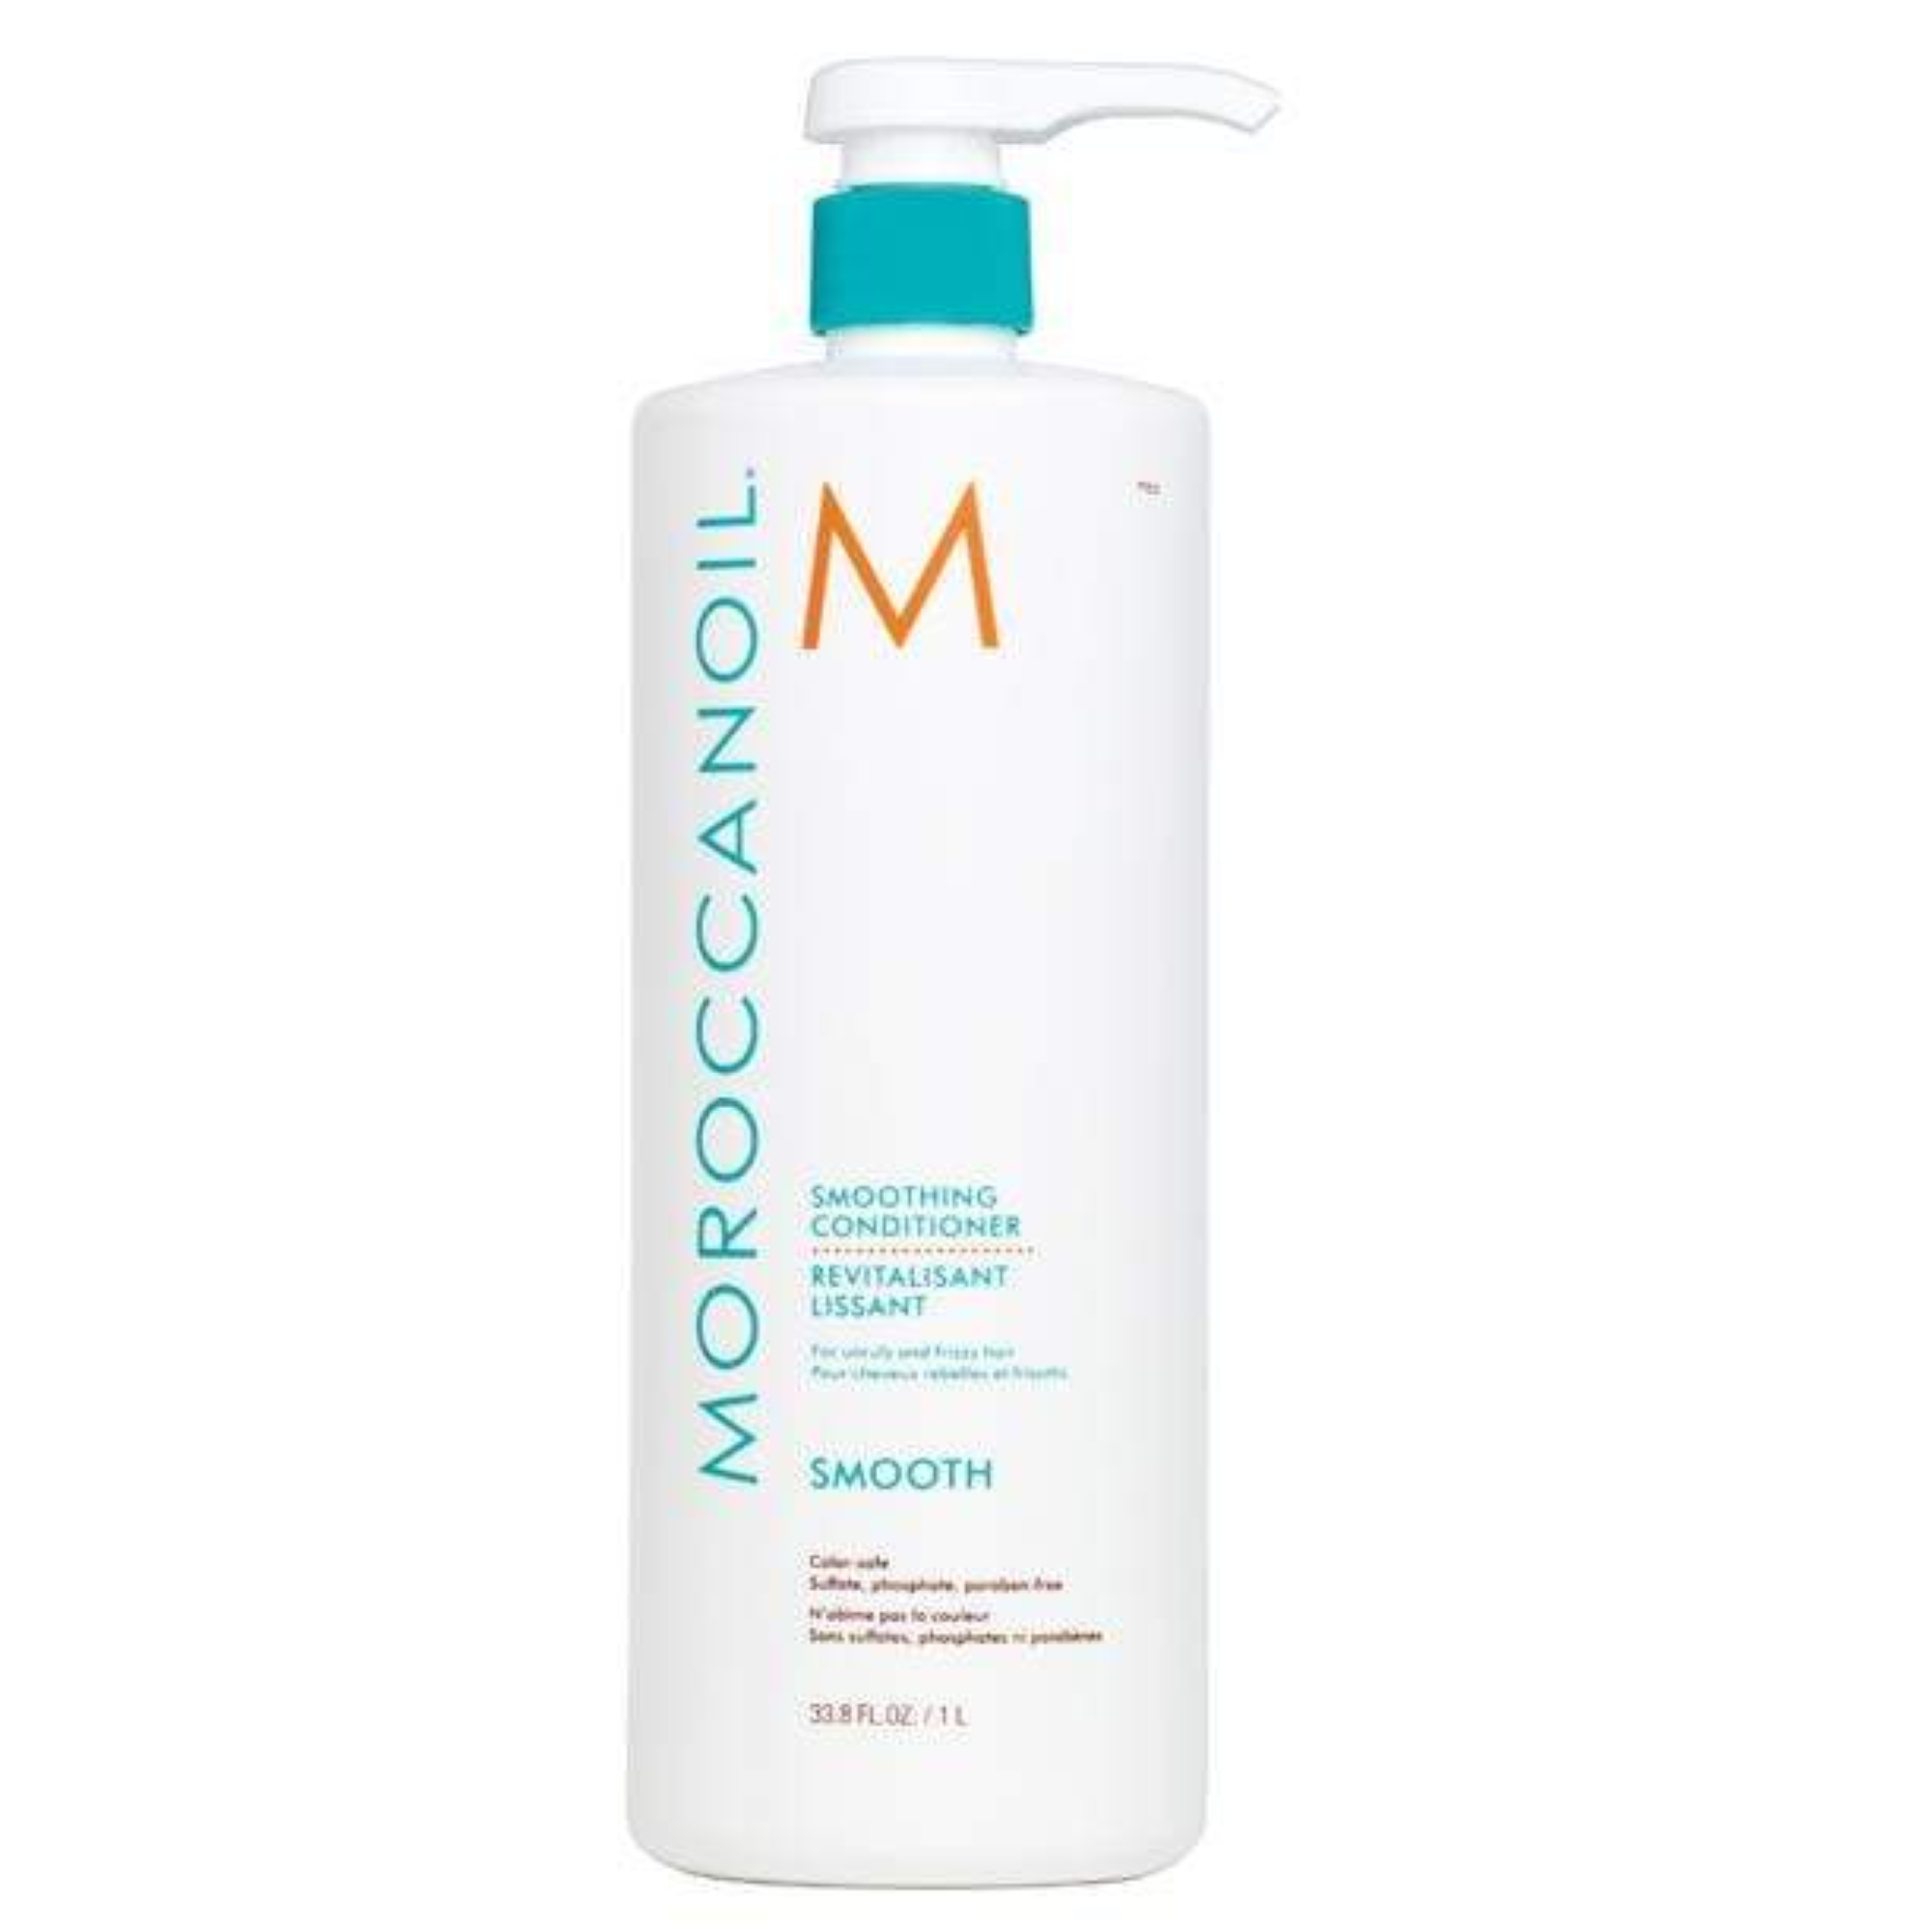 MoroccanOil Frizz Control Shampoo and Conditioner Liter Duo / 2x 33.8OZ